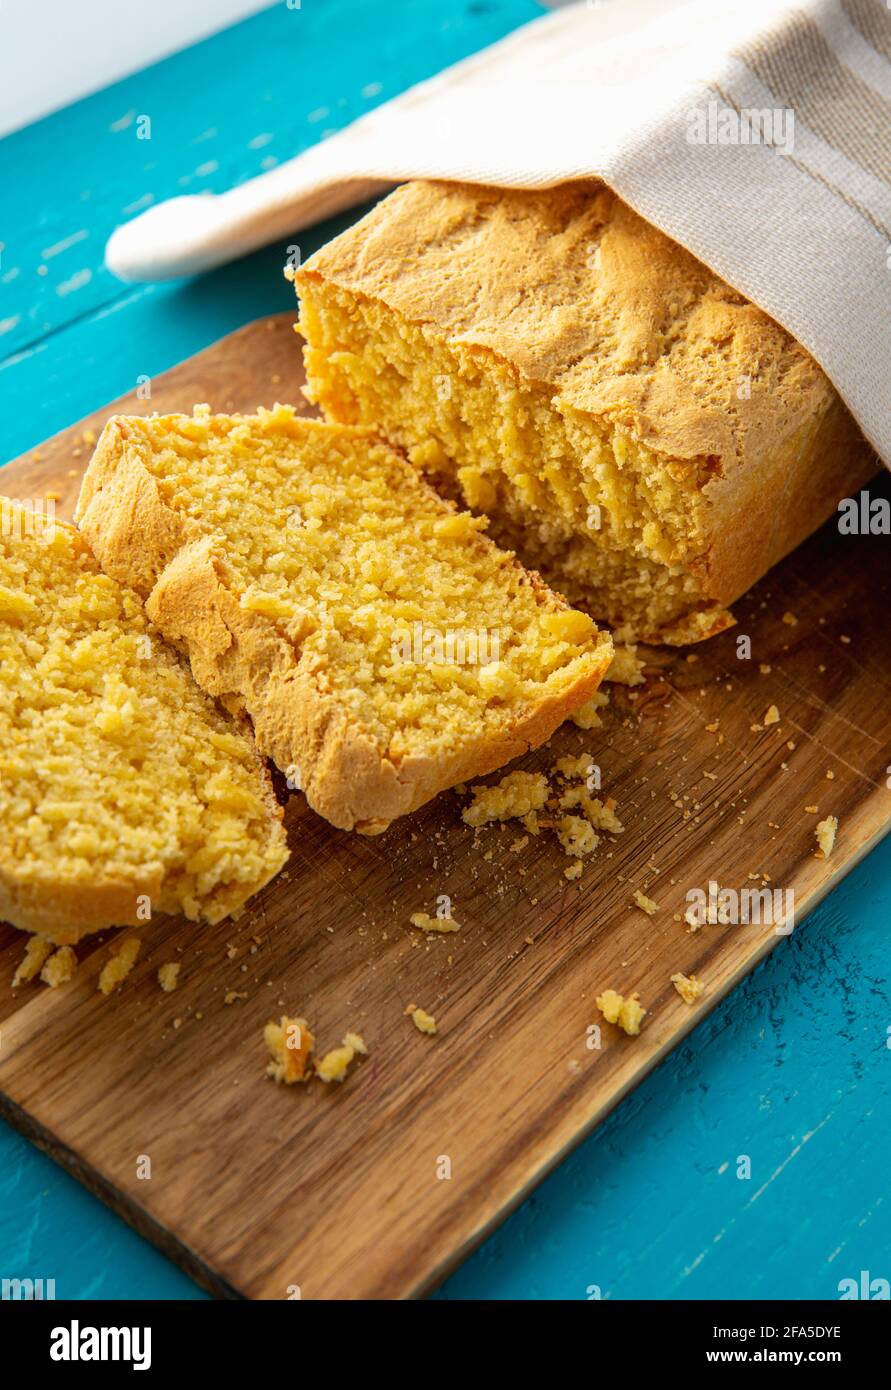 Maisbrot ist Brot mit Maismehl, Maismehl. Schöner hausgemachter, gelber Maisbrot-Laib unter einem Baumwolltuch. Blauer Holzhintergrund. Stockfoto